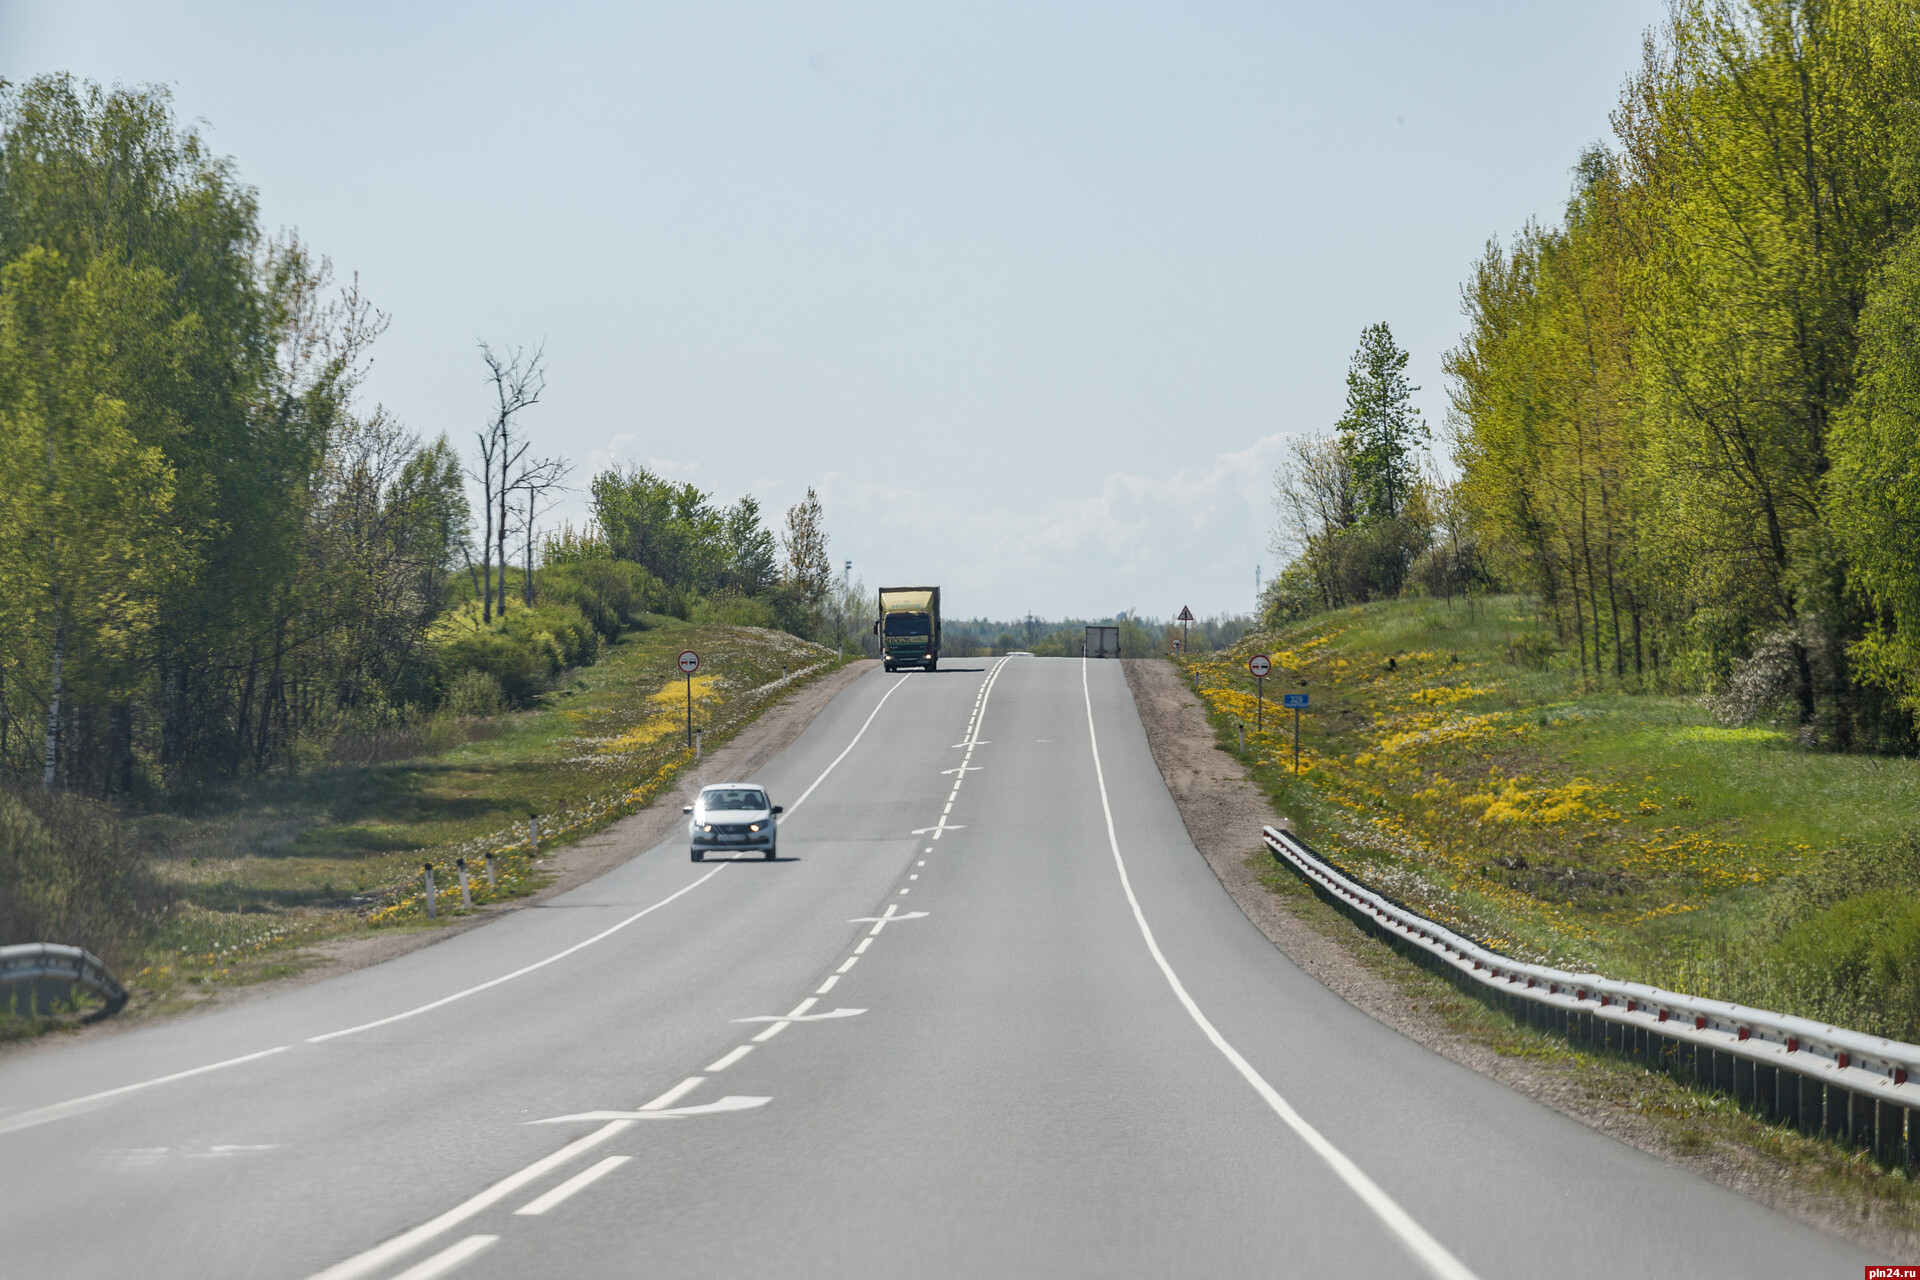 Скорость движения транспорта ограничат на трассе Р-23 в Псковской области